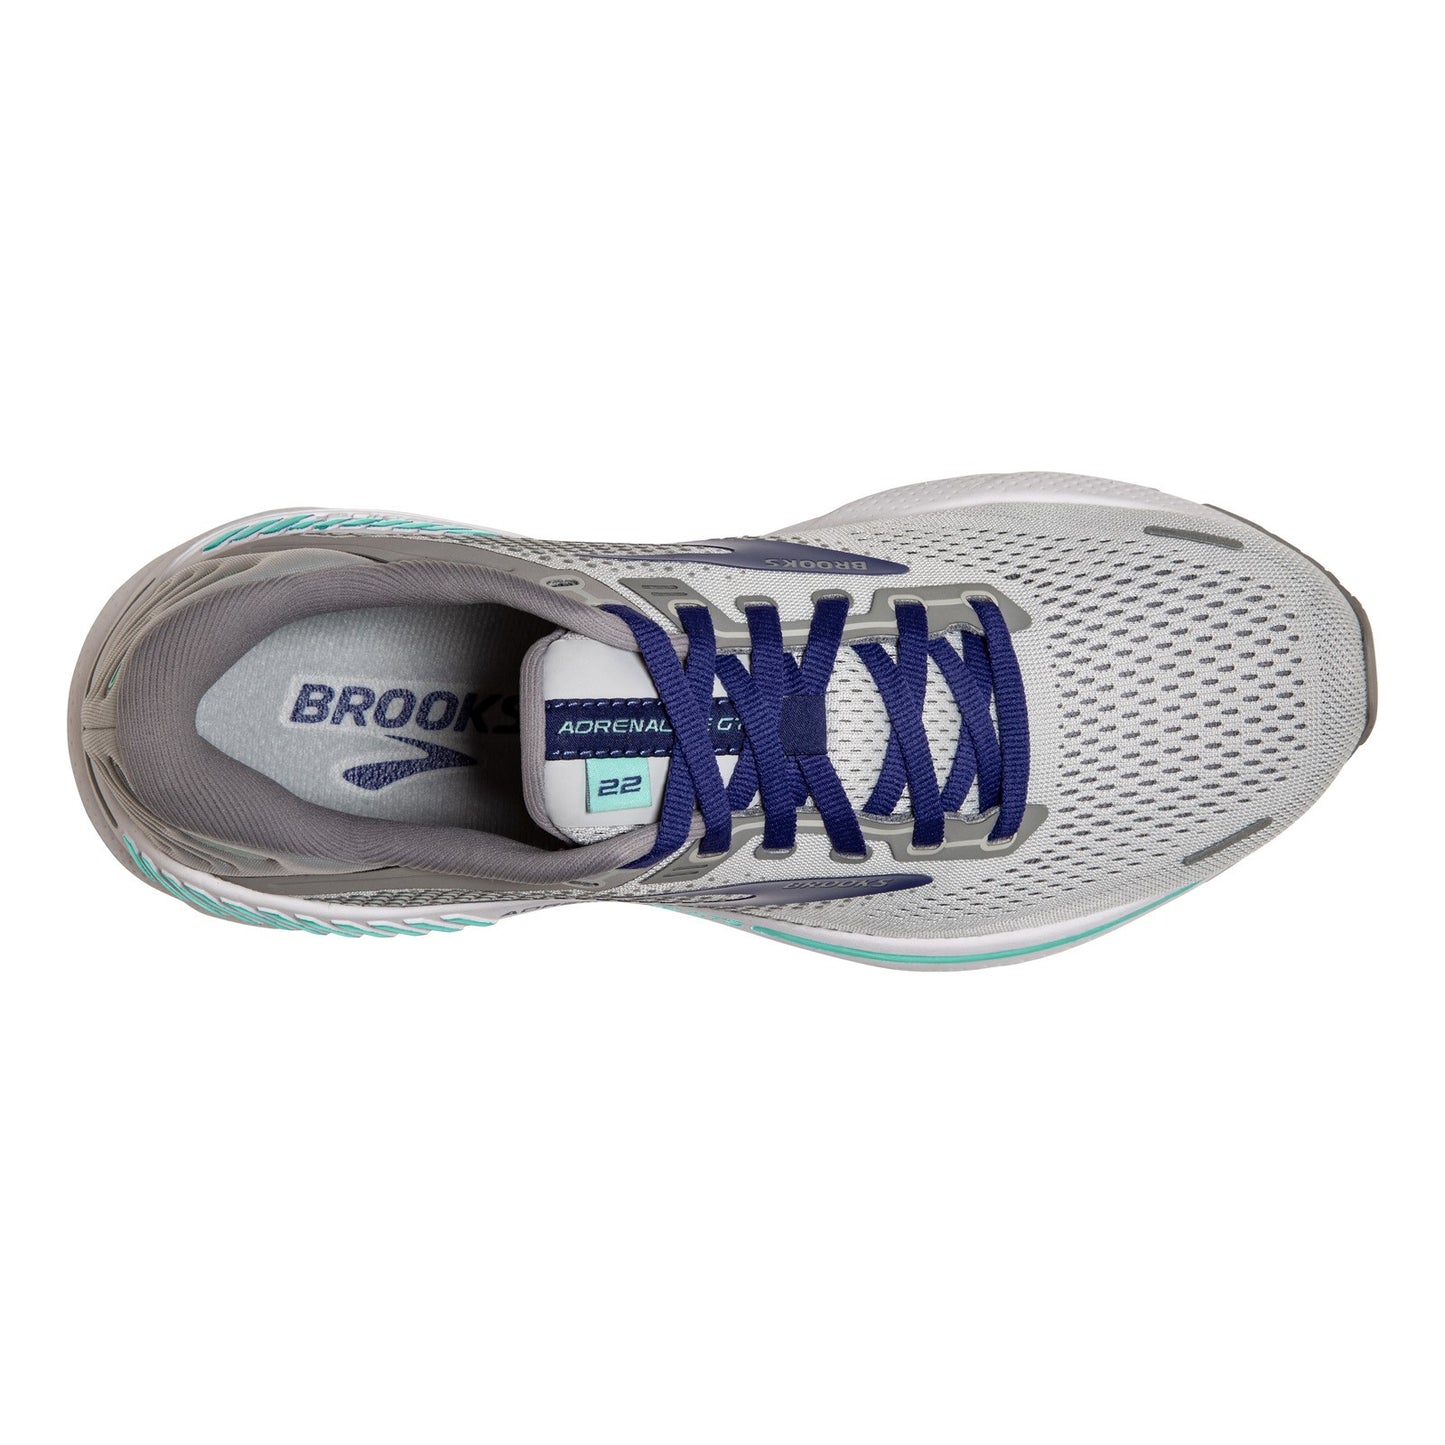 Peltz Shoes  Women's Brooks Adrenaline GTS 22 Running Shoe - Wide Width Alloy/Blue 120353 1D 045